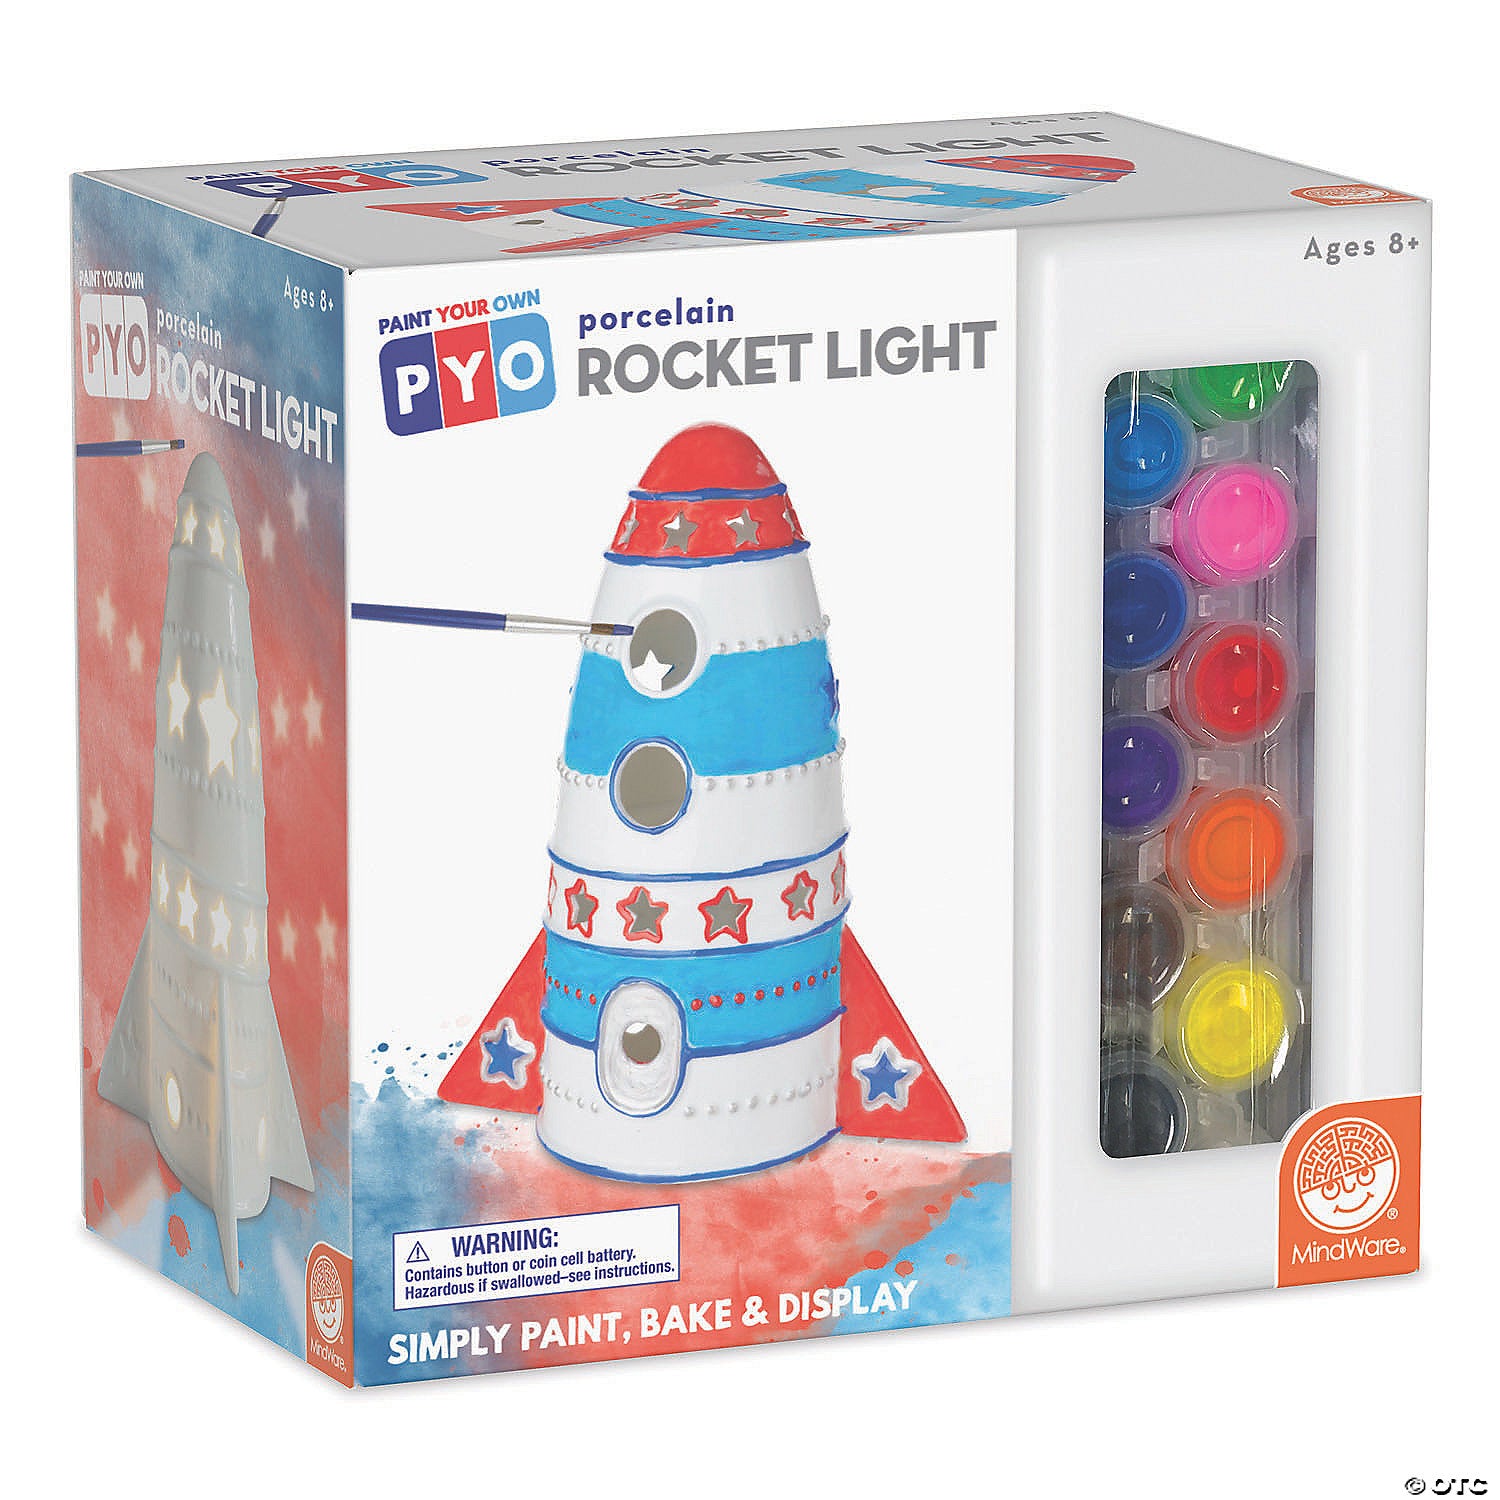 Paint Your Own Porcelain Rocket Light